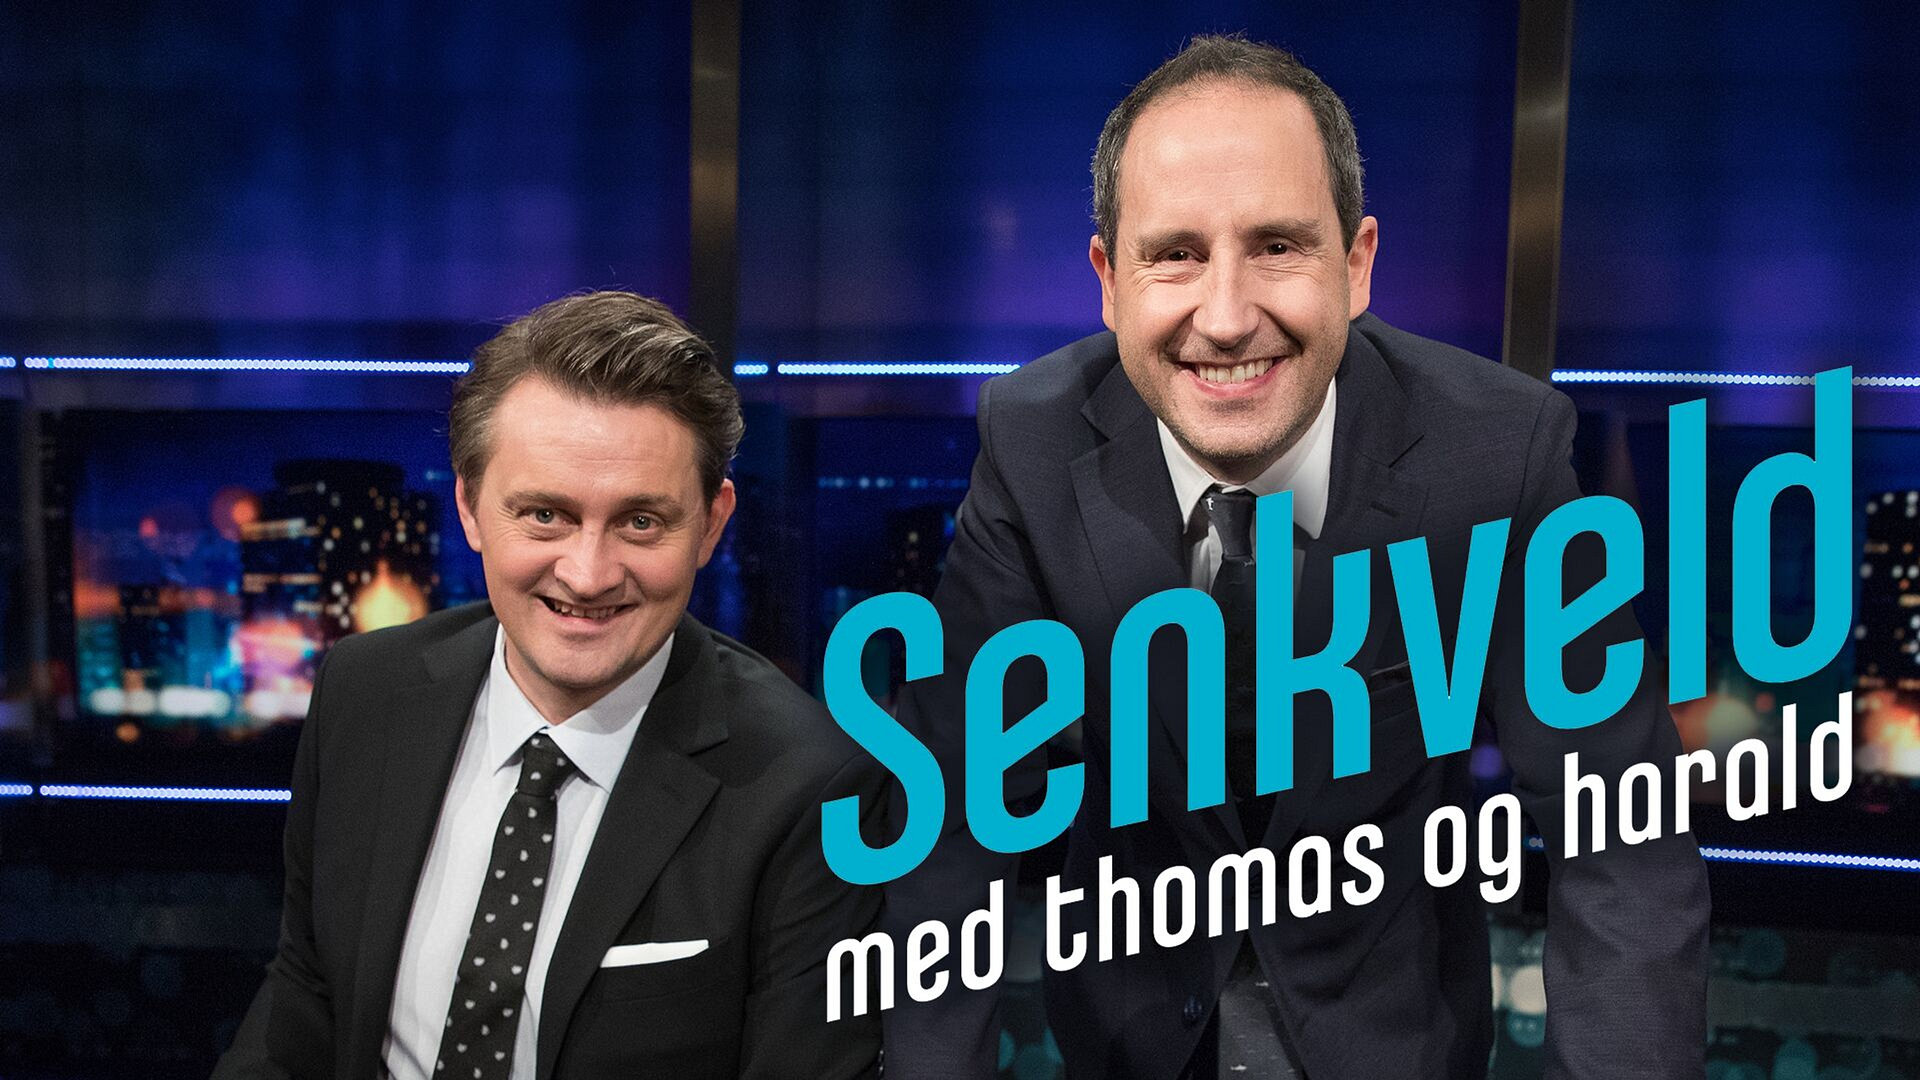 Senkveld med Thomas og Harald (24) - episode 8